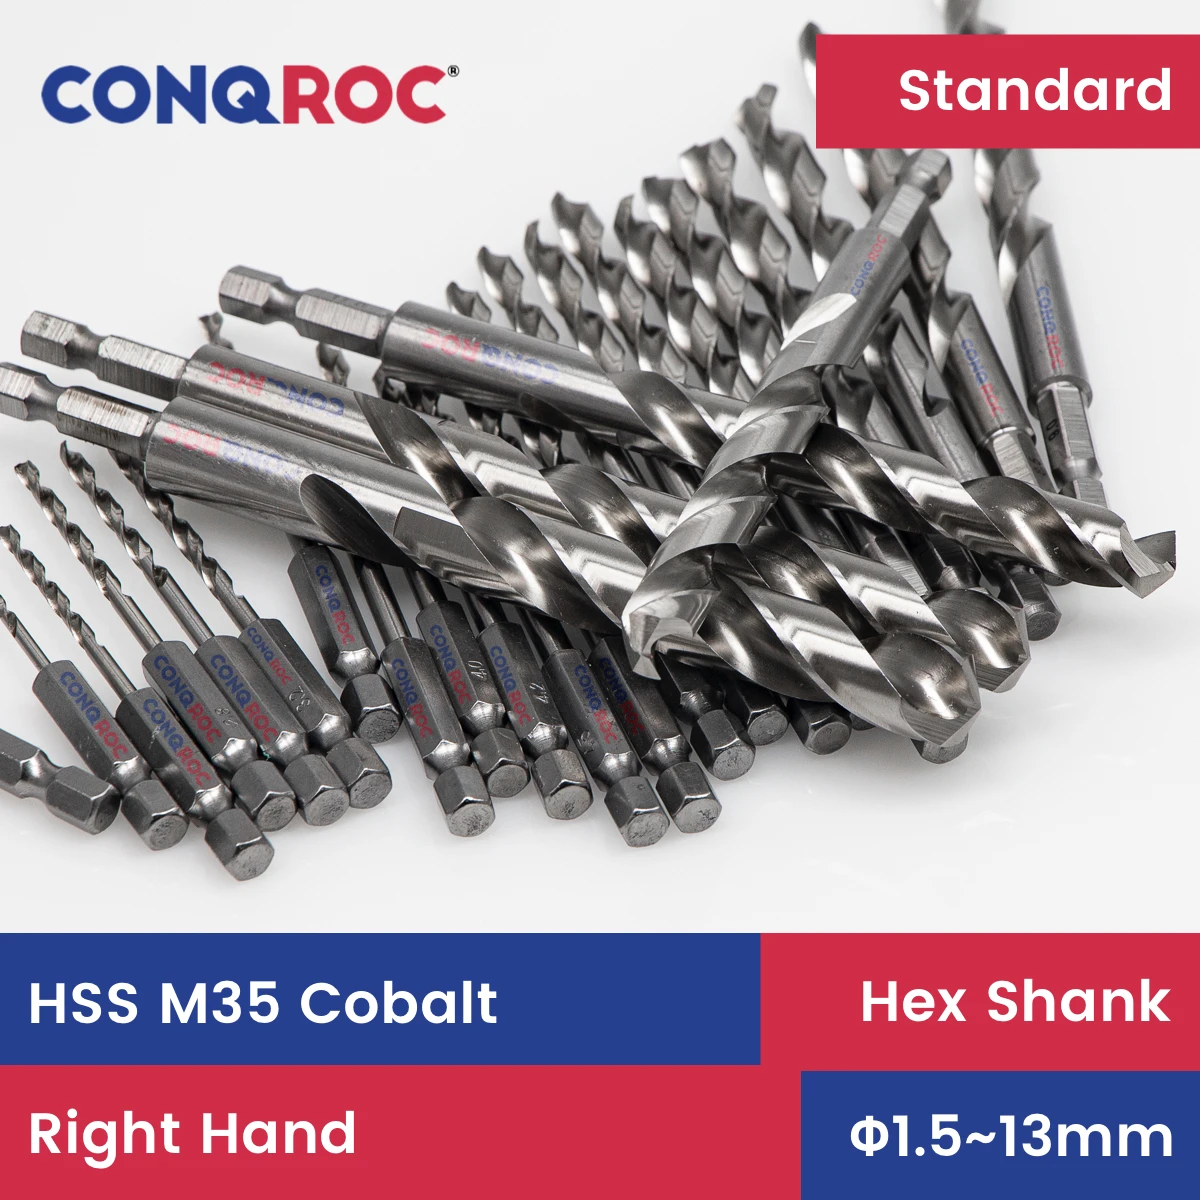 HSS M35 Cobalt Twist Drill Bit Hex Shank Diameter from 1.5mm to 13mm